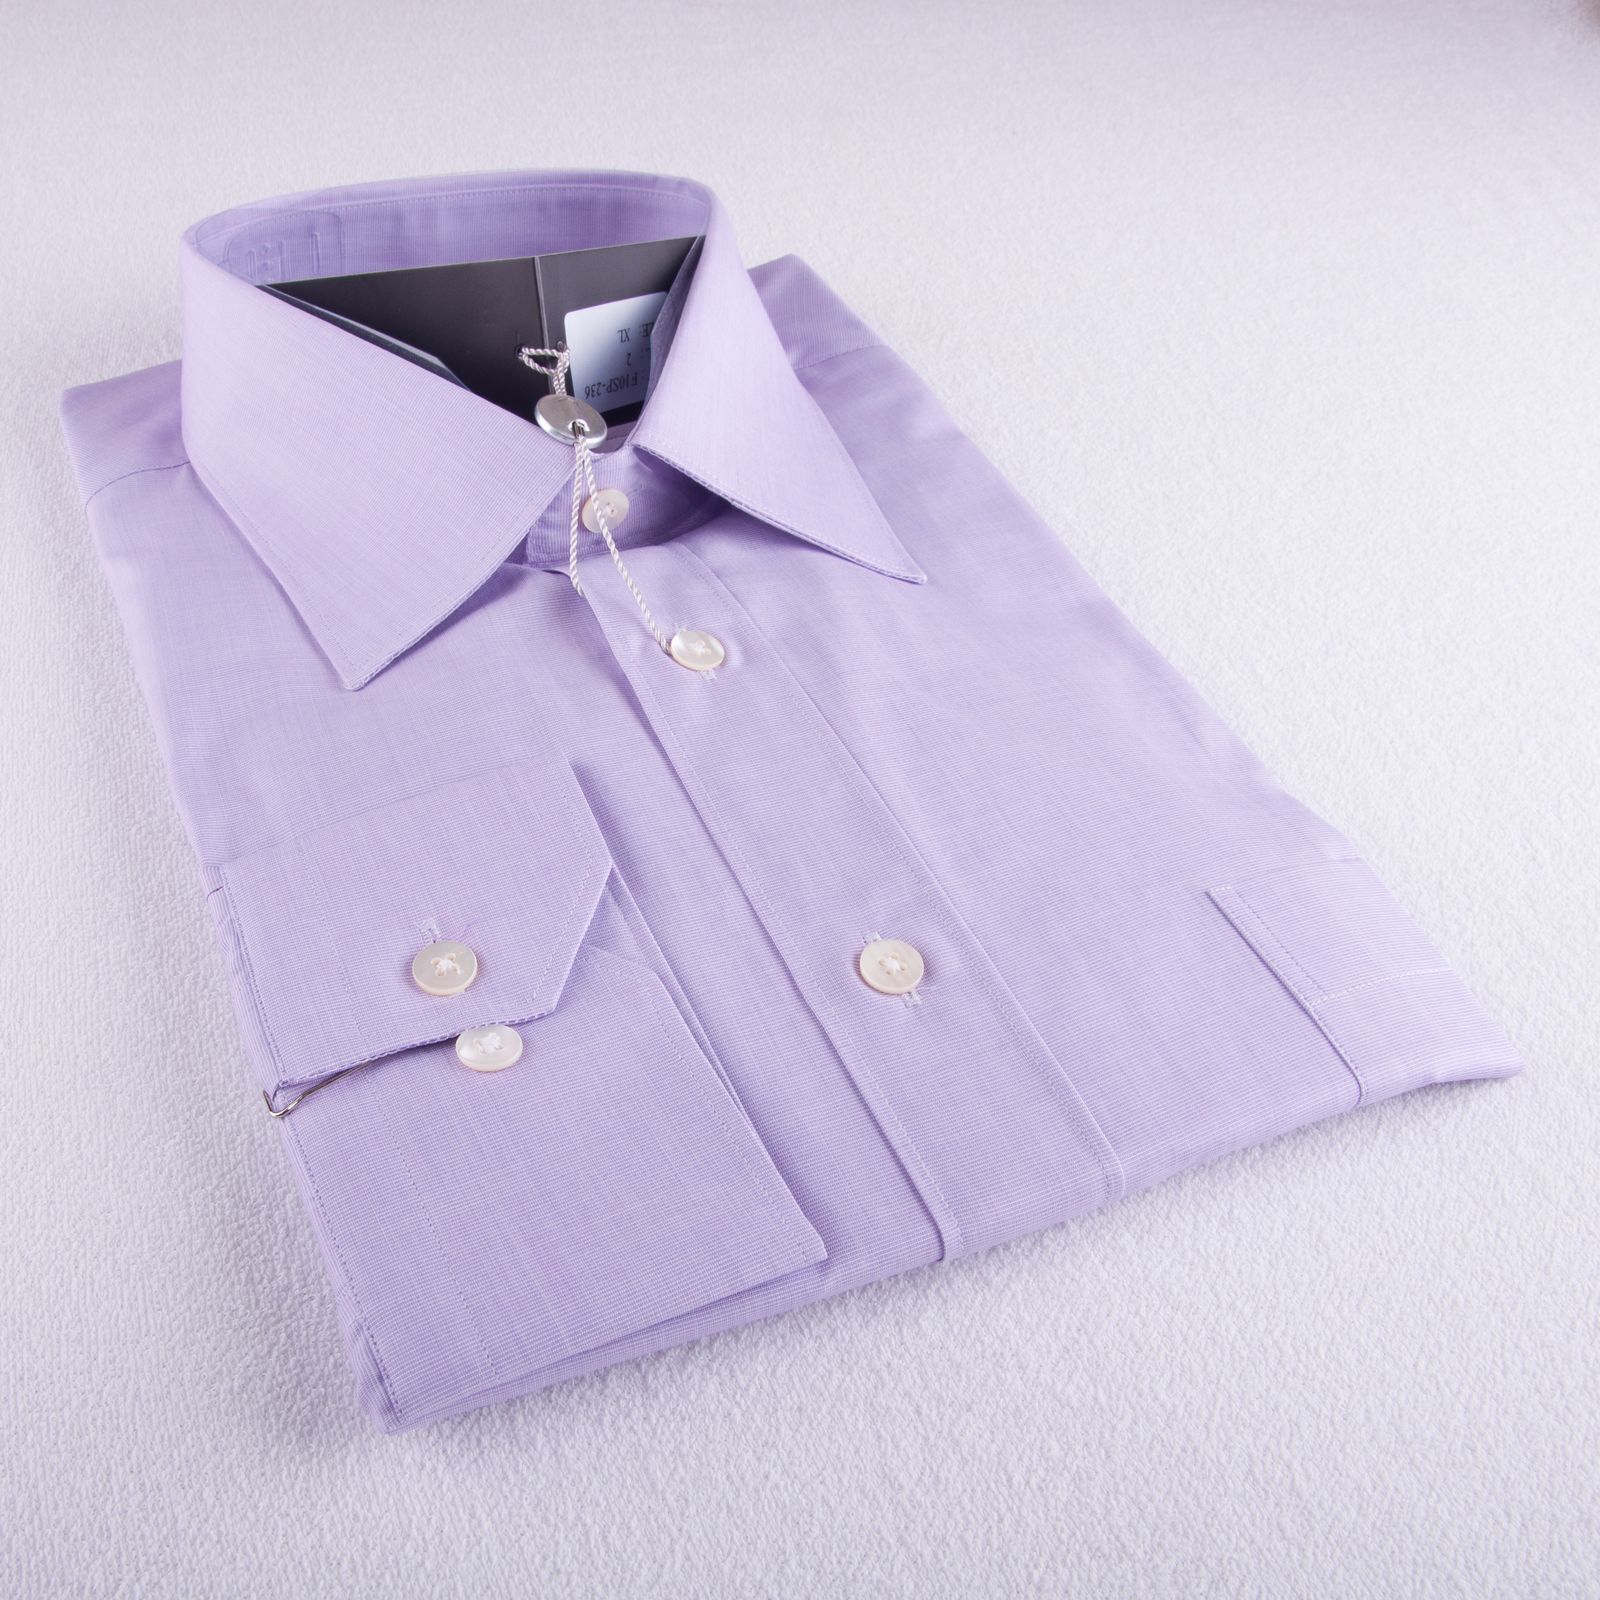 Купить Рубашка мужская FORMENTI F10SP-236 хлопковая в Украина в Одежда для дома и отдыха - уют в магазине Lingerie.ua